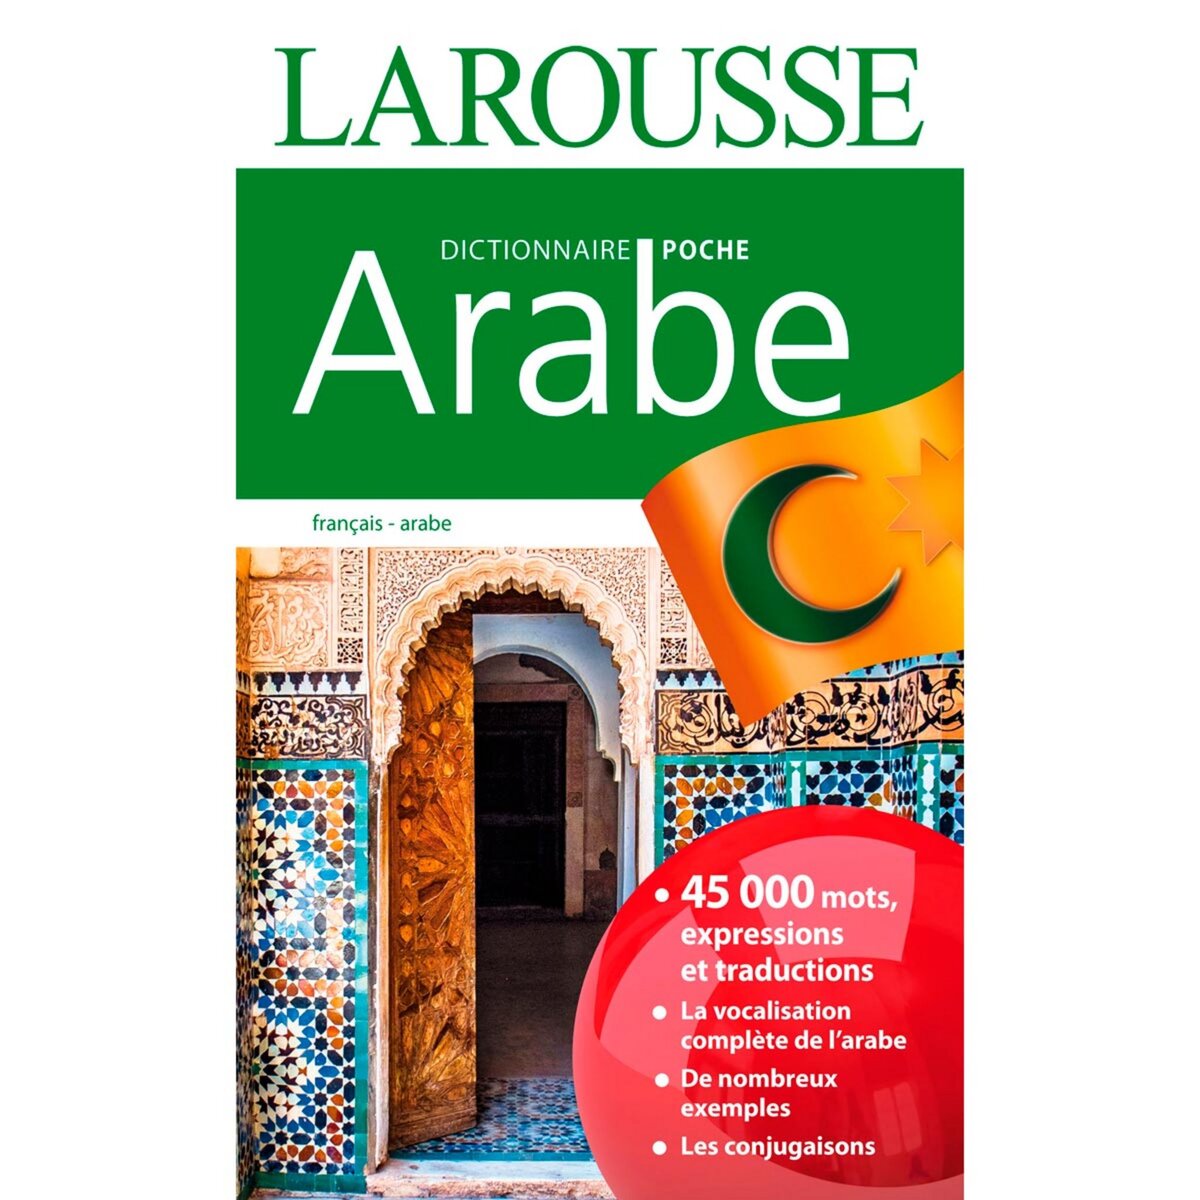 LAROUSSE Dictionnaire Larousse poche Arabe